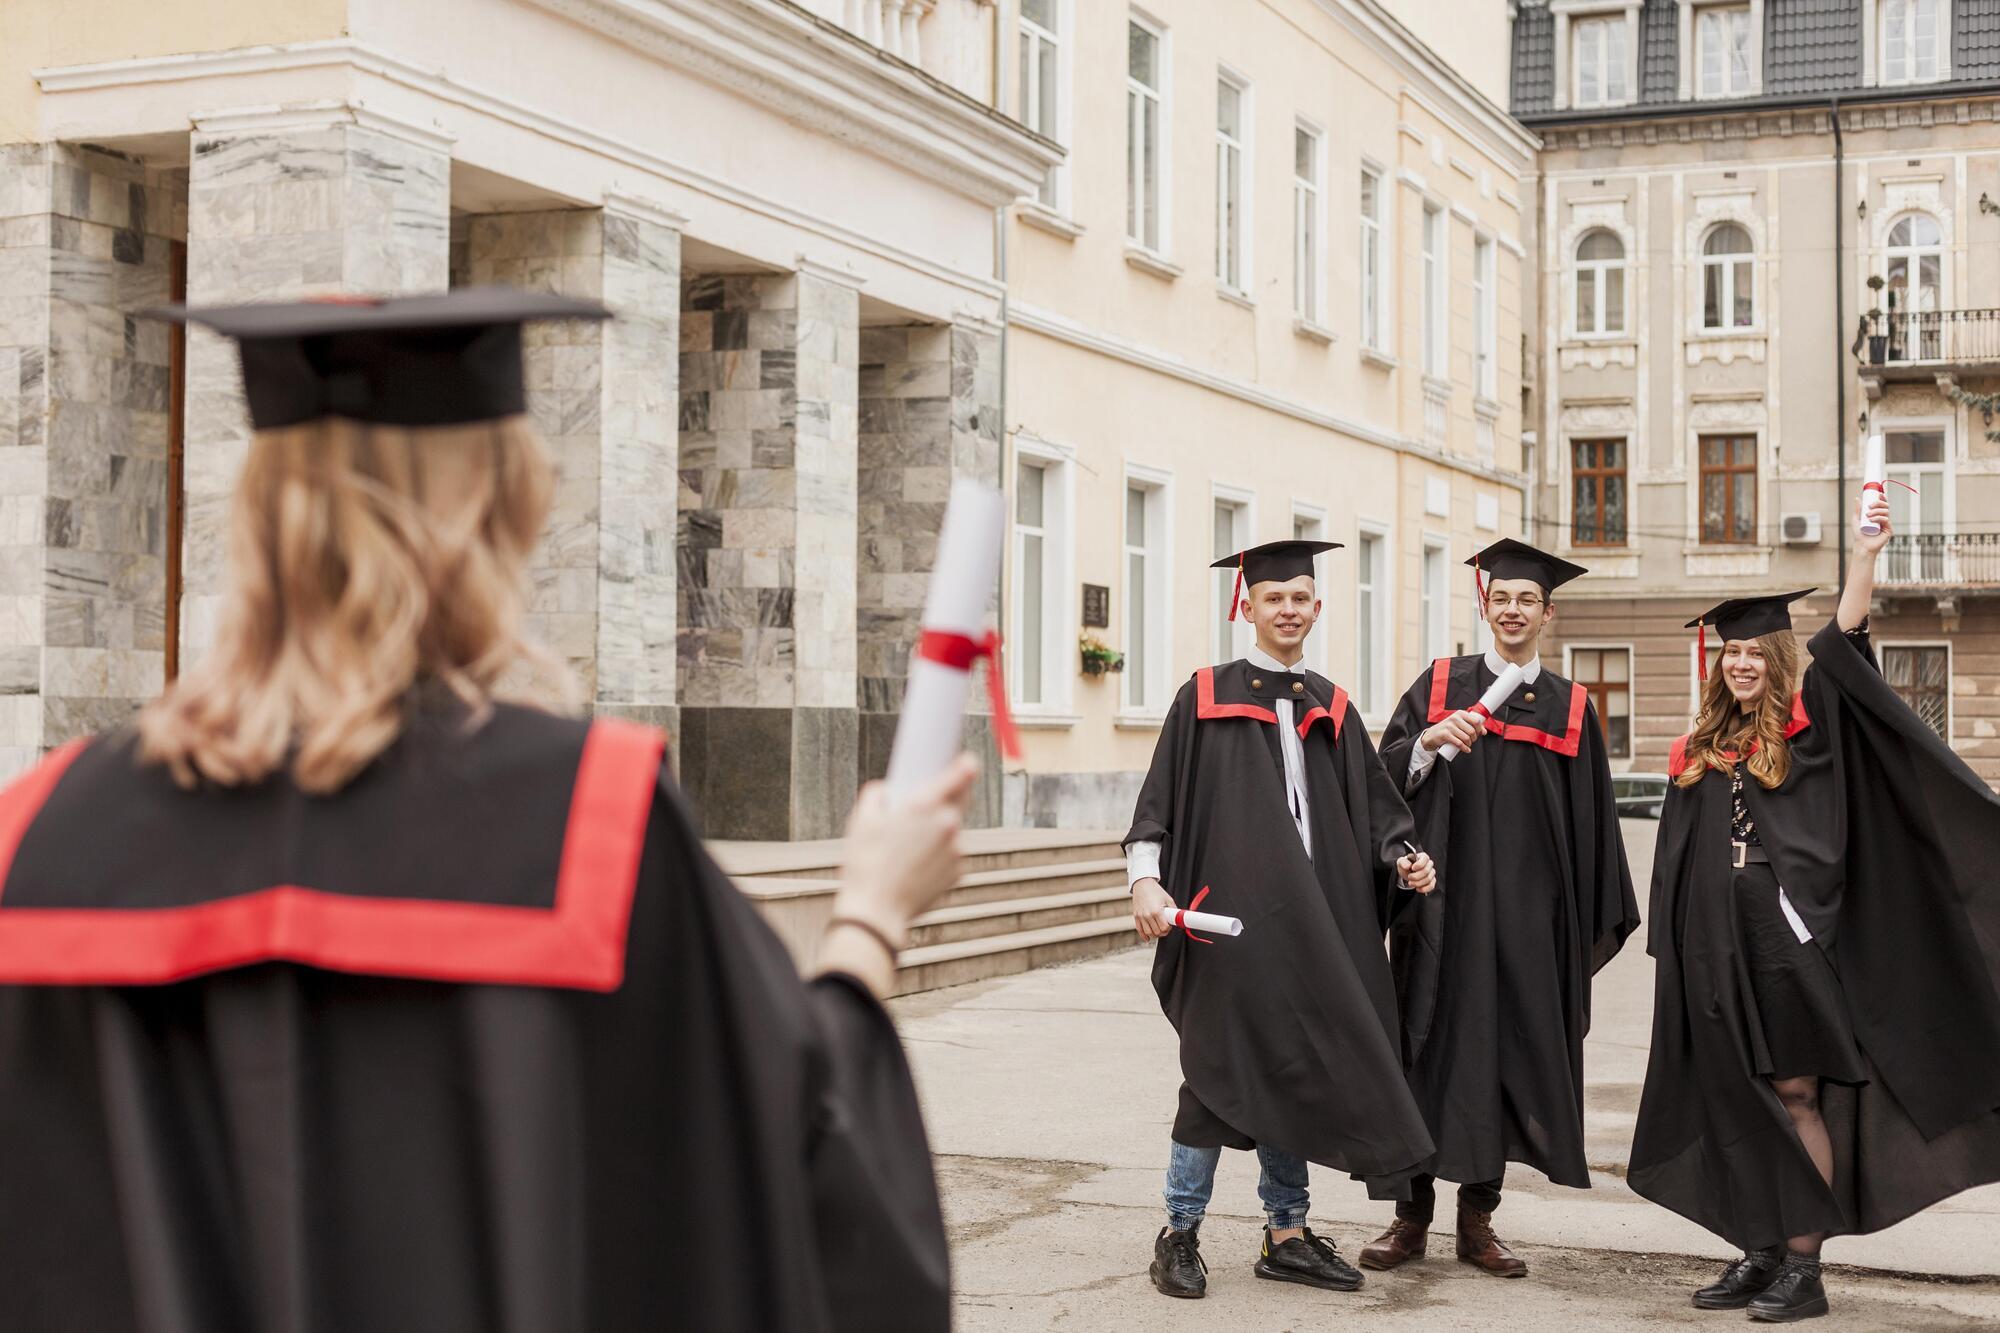 В Полесском национальном университете массово увольняются преподаватели: замминистра образования заявил о расколе